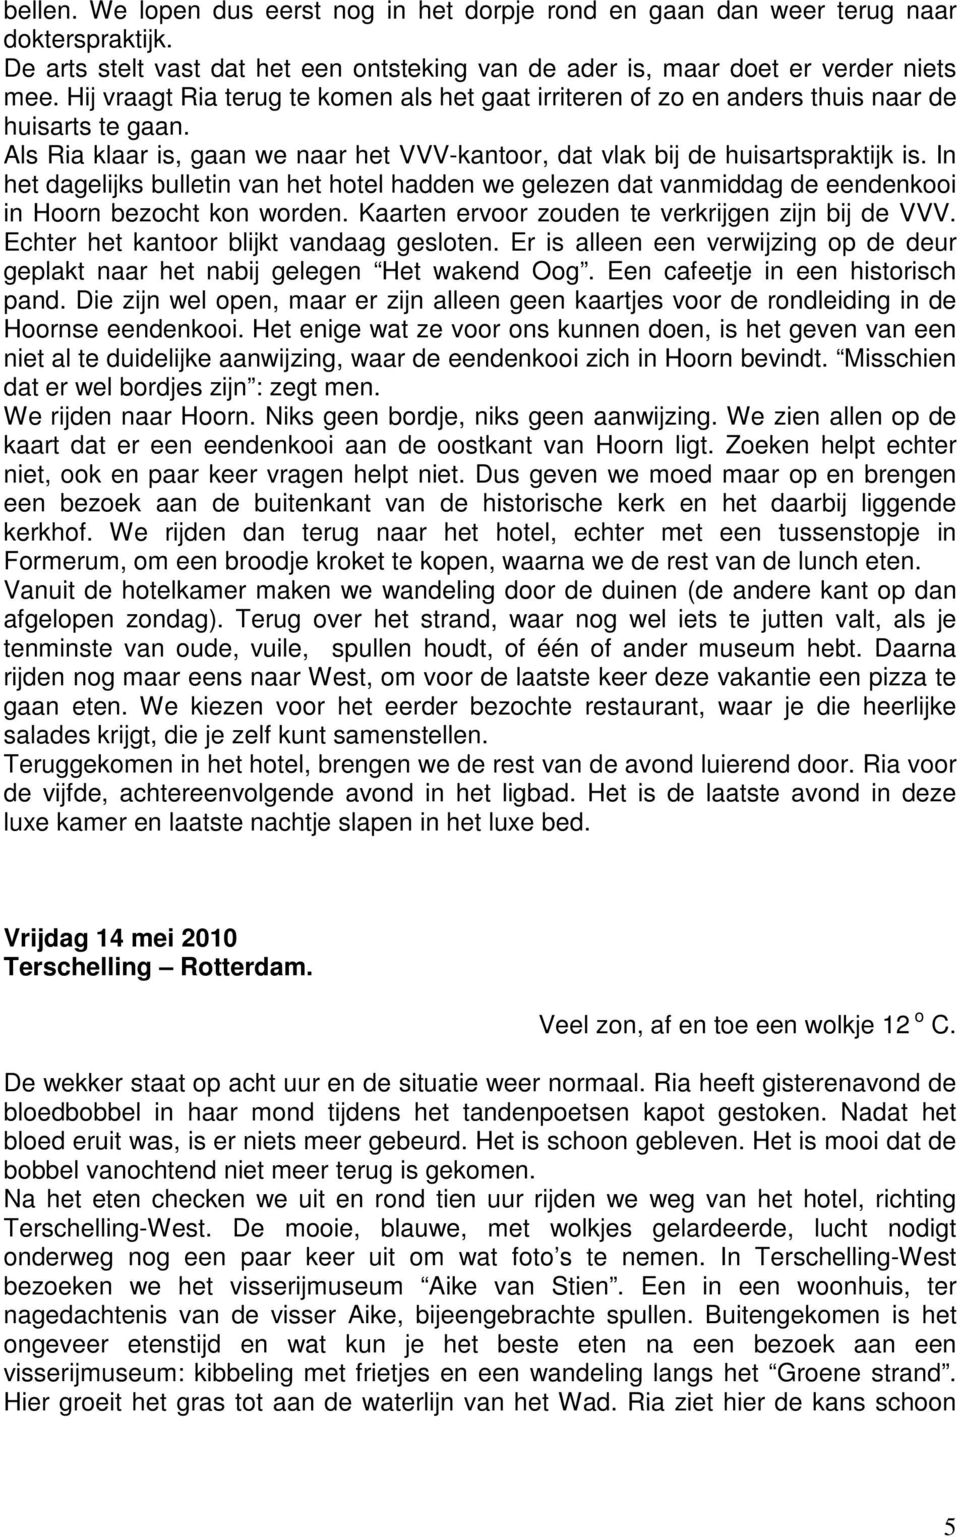 In het dagelijks bulletin van het hotel hadden we gelezen dat vanmiddag de eendenkooi in Hoorn bezocht kon worden. Kaarten ervoor zouden te verkrijgen zijn bij de VVV.